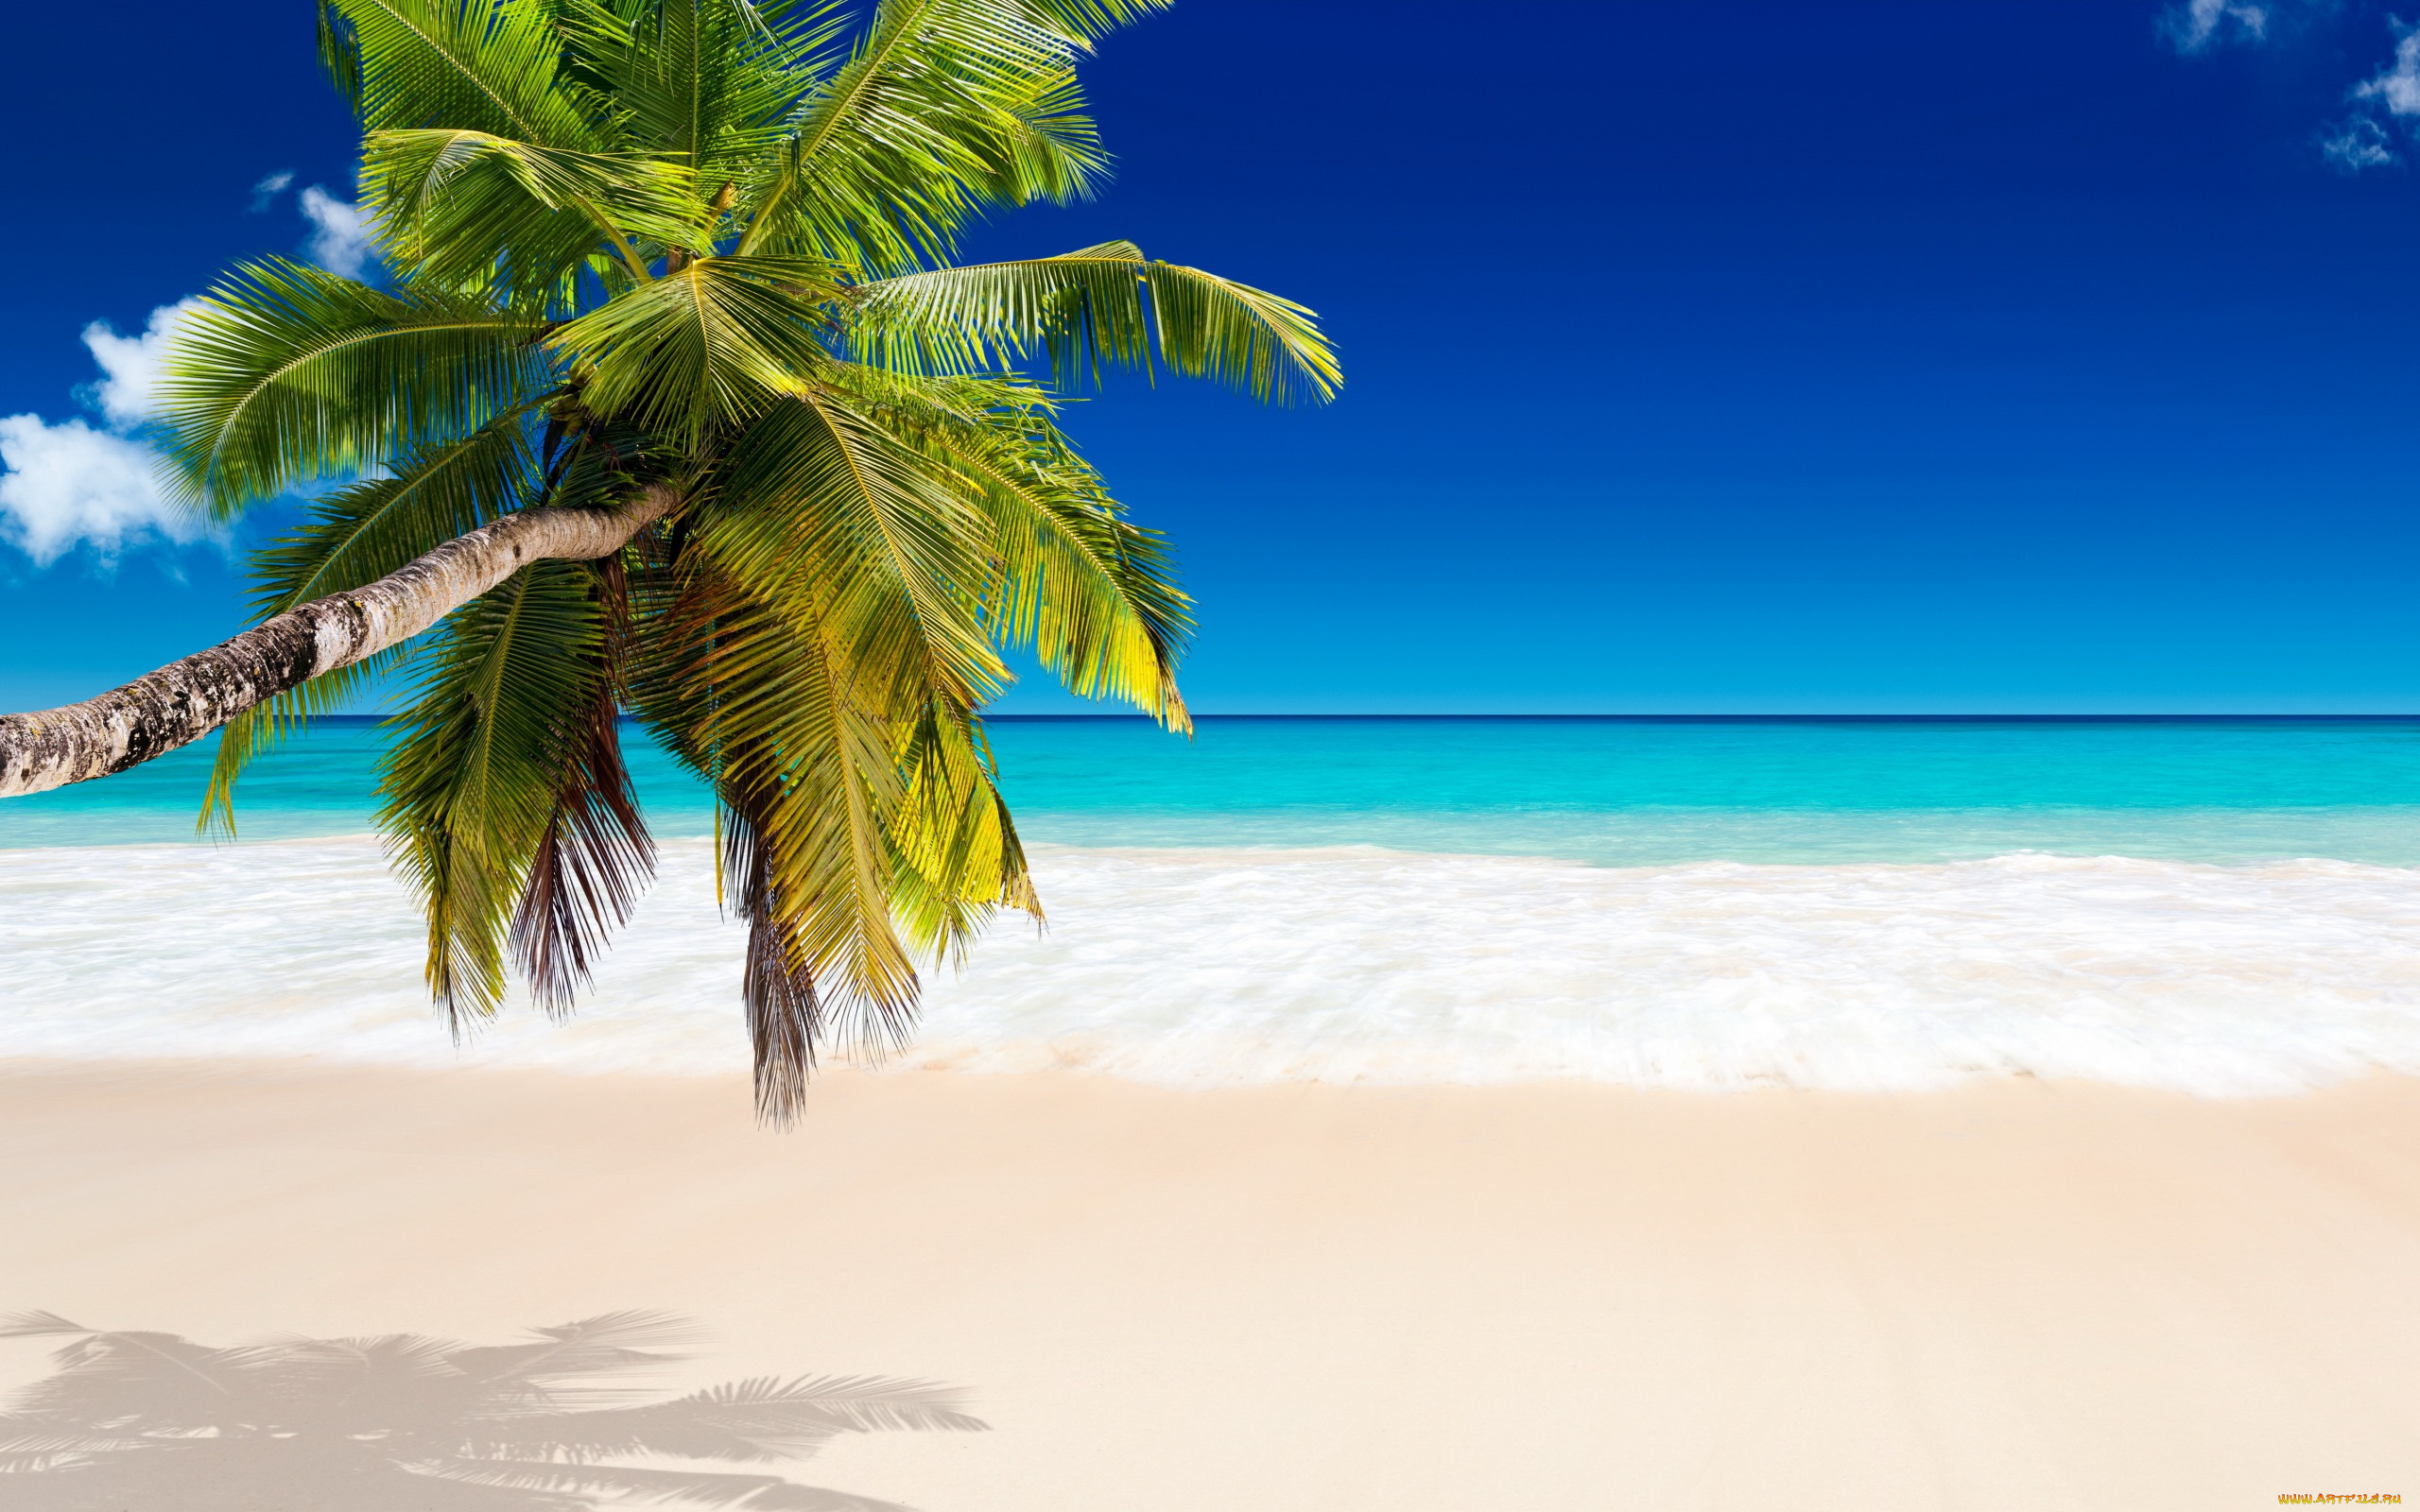 природа, тропики, palms, beach, tropical, paradise, пляж, summer, vacation, sea, пальмы, море, ocean, sunshine, берег, песок